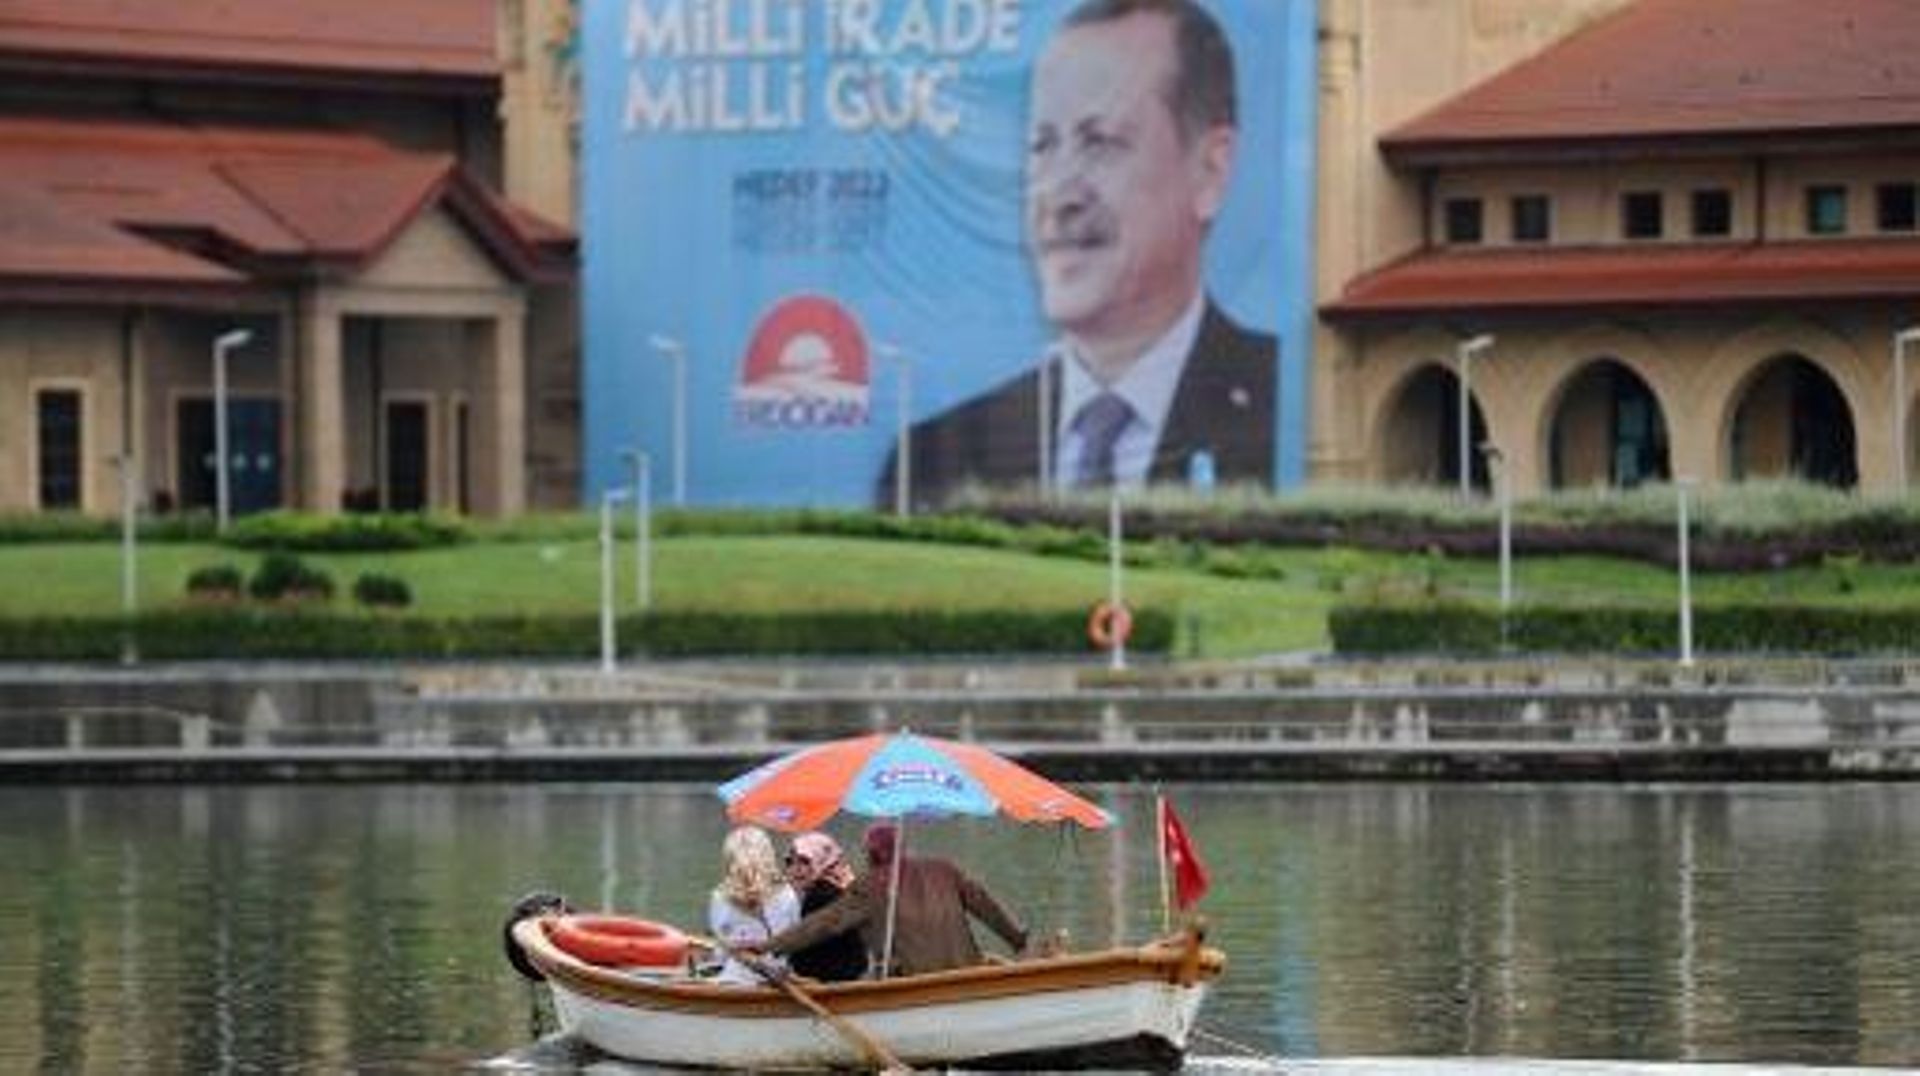 Une affiche électorale de Recip Tayep Erdogan sur la corne d'or à Istanbul, samedi 9 août 2014, à la veille de l'élection présidentielle dont il fait figure d'archi favori